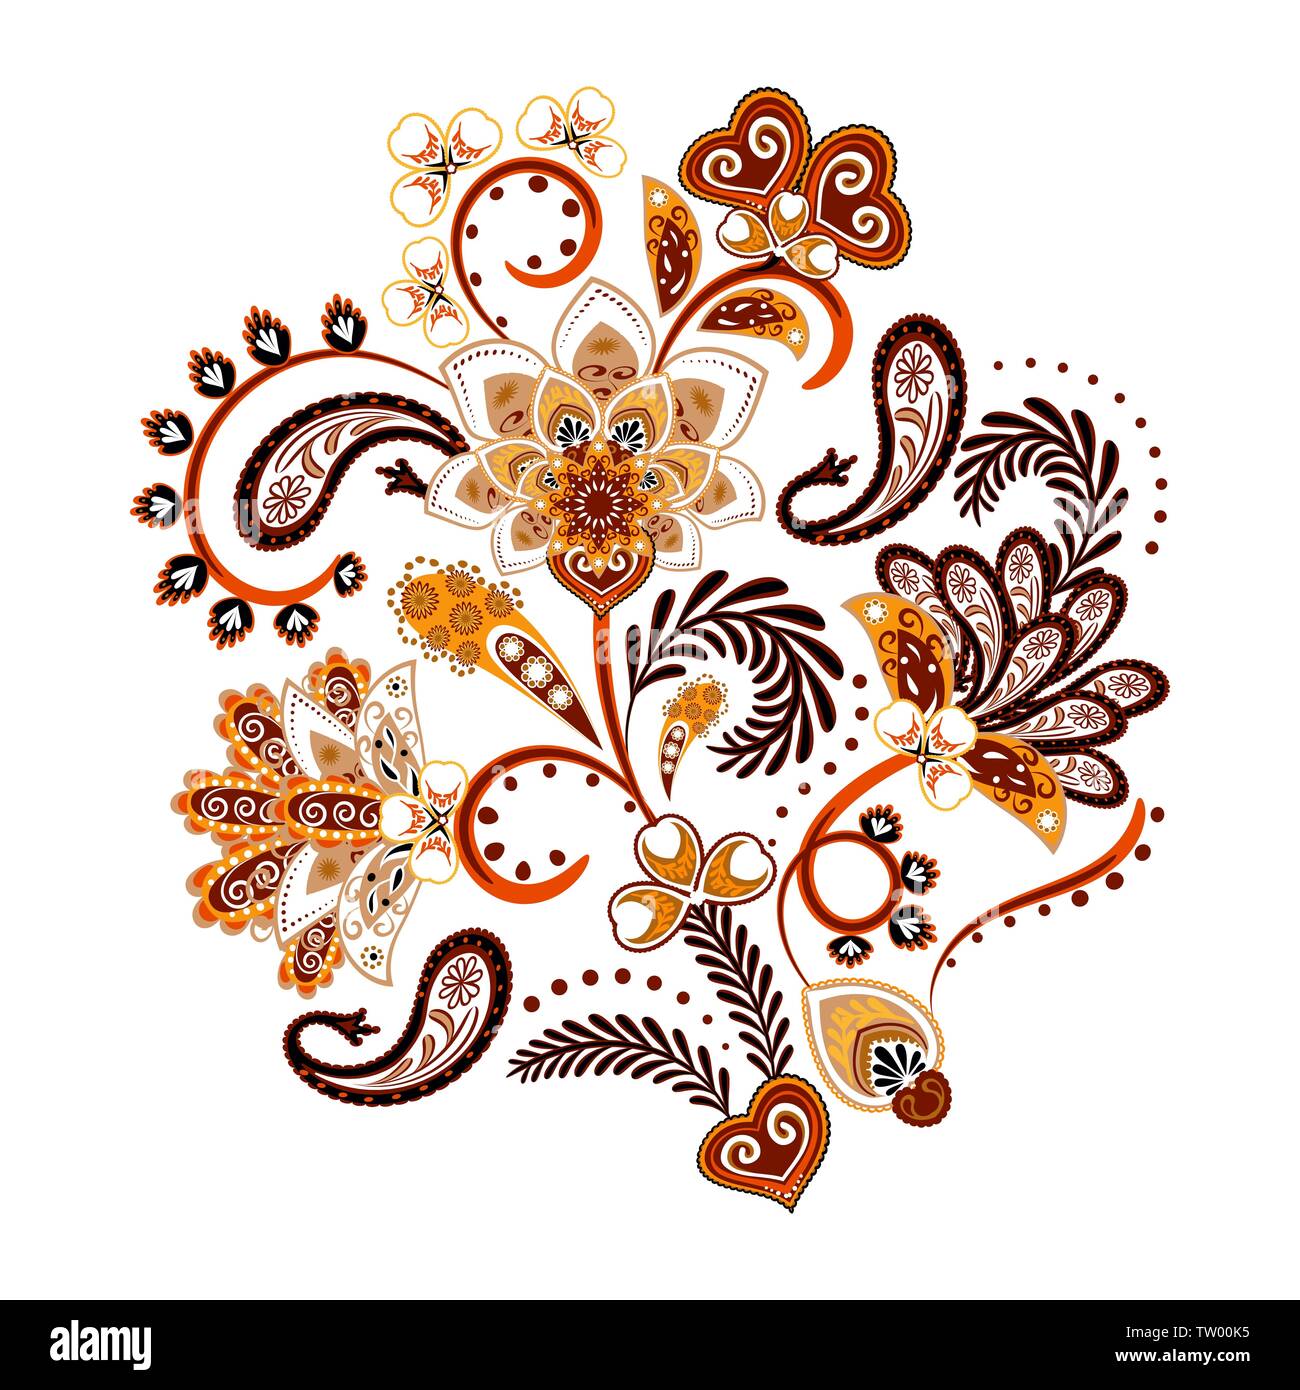 La broderie. Bouquet avec de belles fleurs, feuilles et Paisley. Composition florale aux couleurs vives sur fond blanc. Illustration de Vecteur